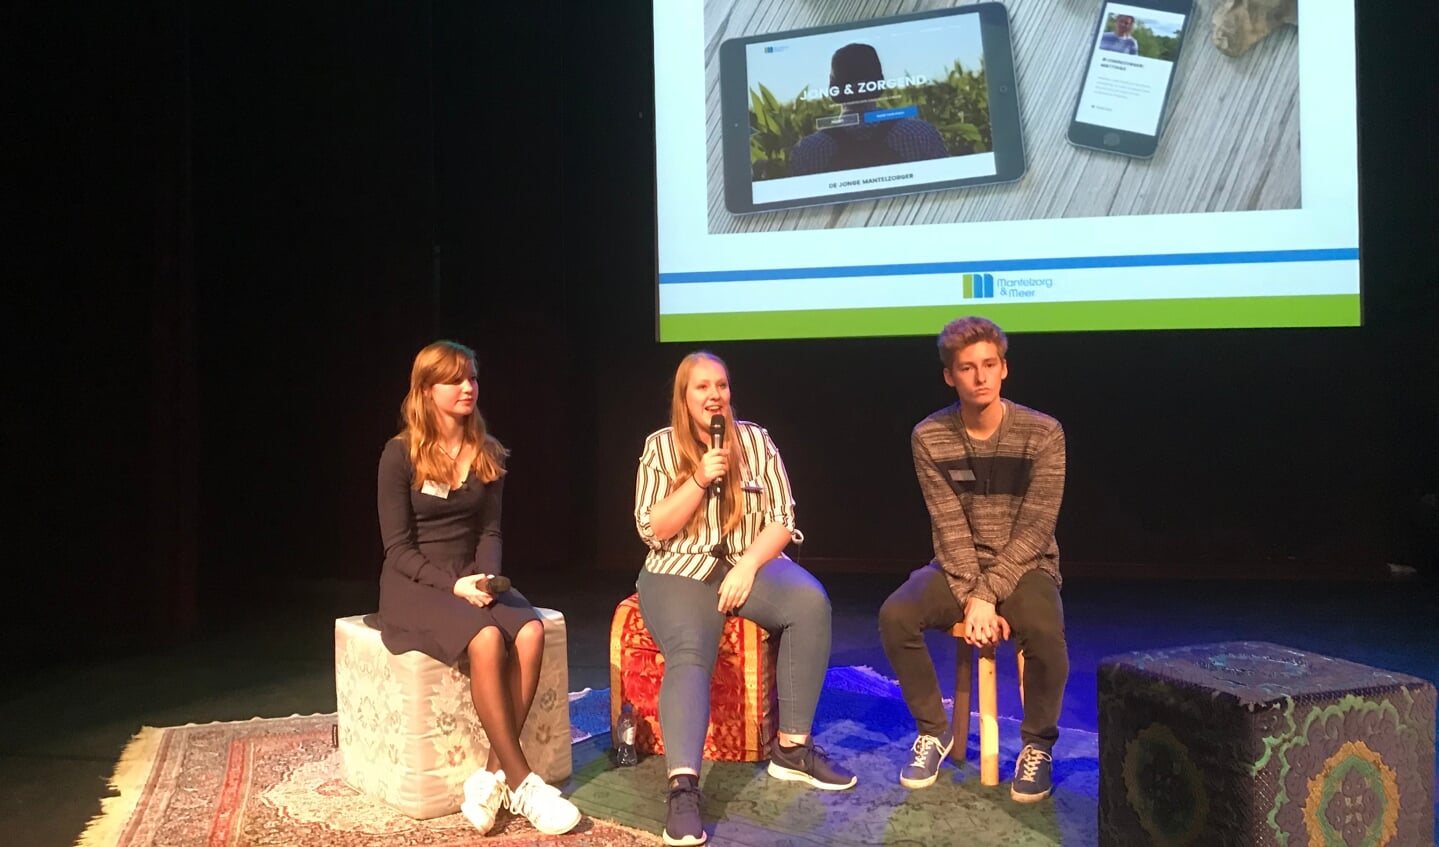 Jonge mantelzorgers vertelden in 2018 hun verhaal tijdens het symposium Jong en Zorgend.